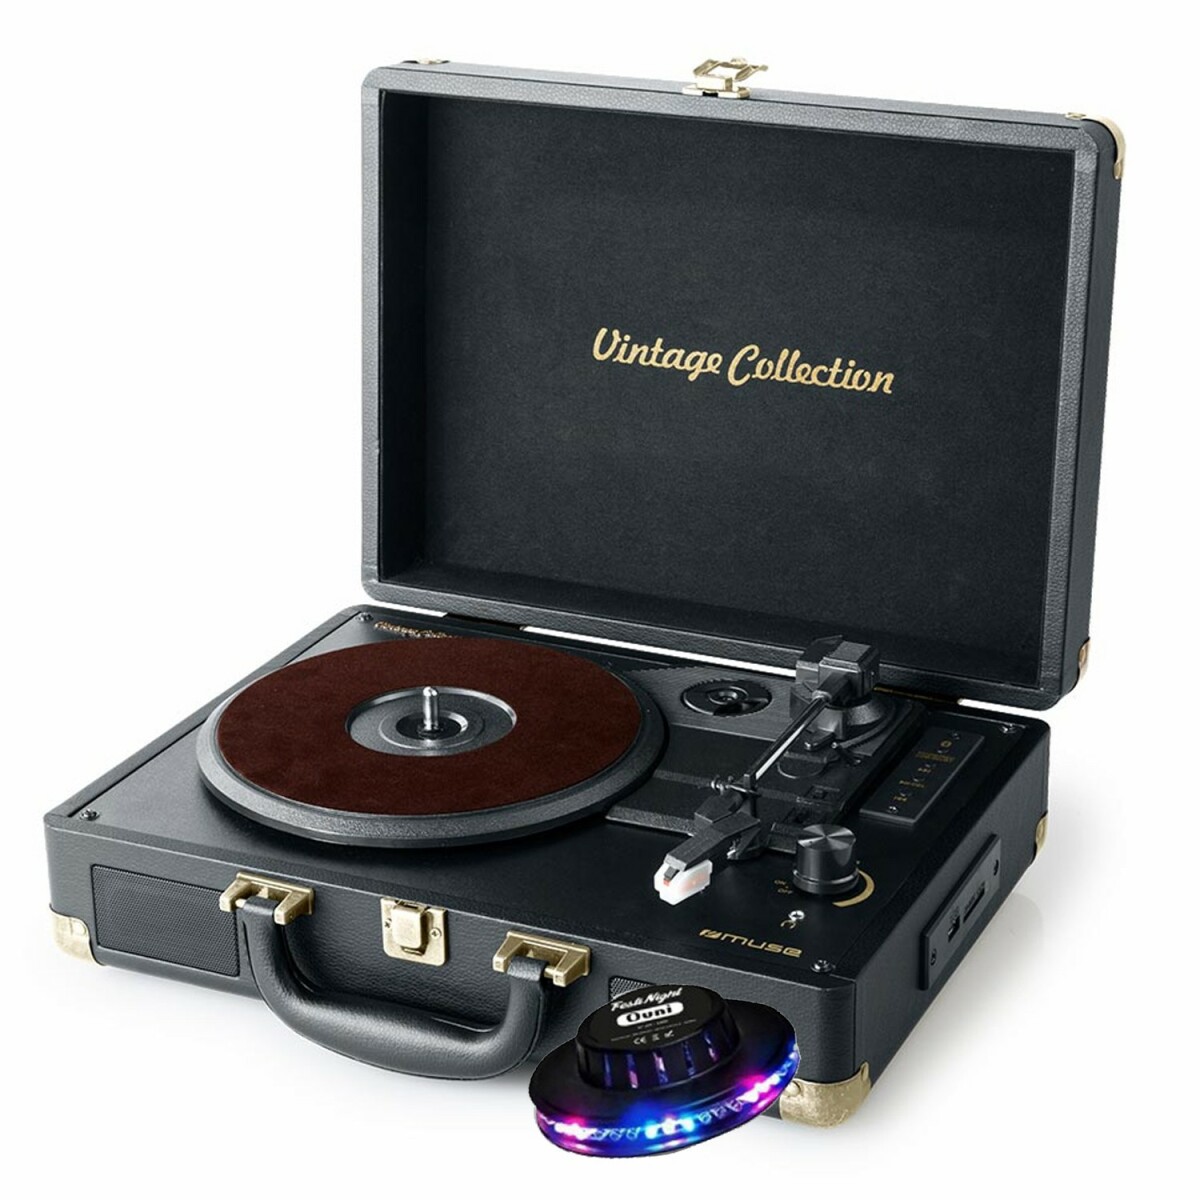 Platine vinyle - Muse MT-103GD - stéréo vintage collection 33/45/78 tours avec enceintes intégrées - USB/SD/AUX - Lumière OVNI